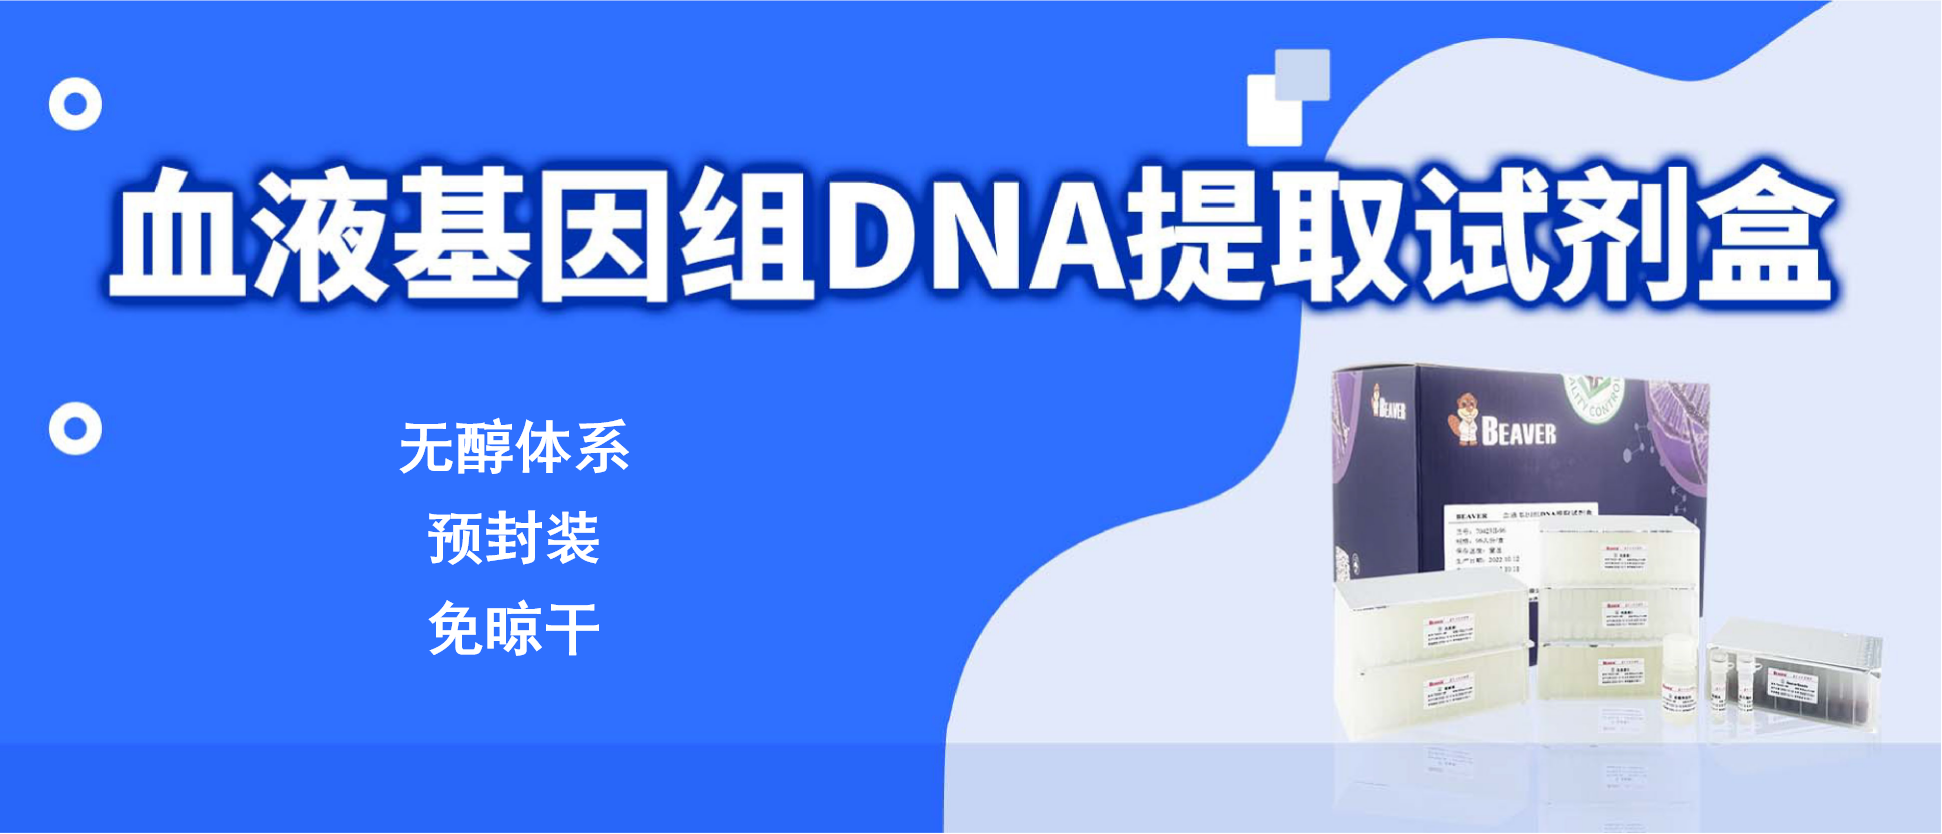 【海狸新品】无醇体系预封装、免晾干血液基因组提取试剂盒发布！